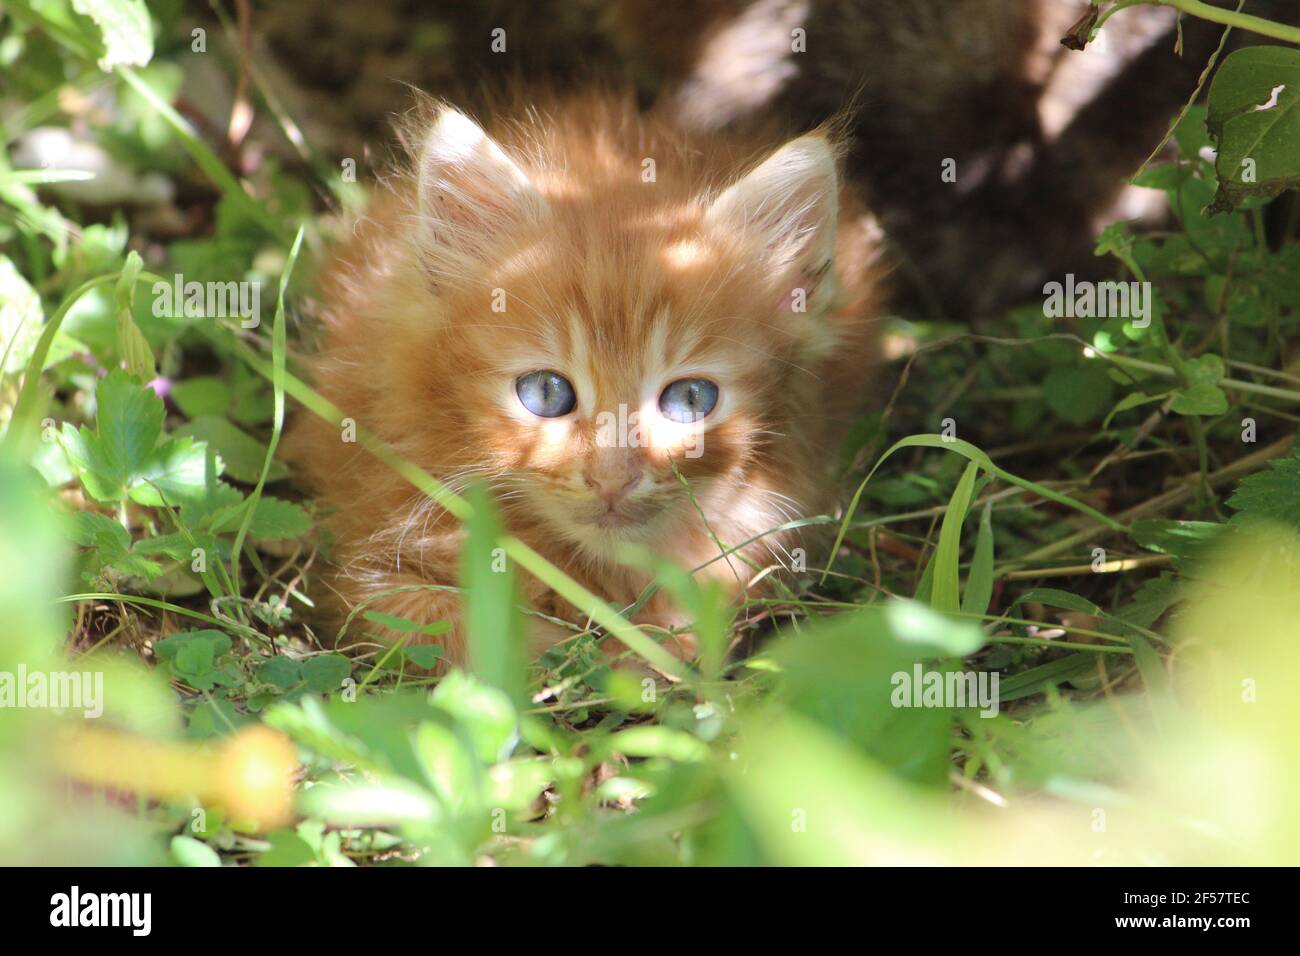 cucciolo di gatto arancione con occhi chiari cat puppy blu eyes Stock Photo